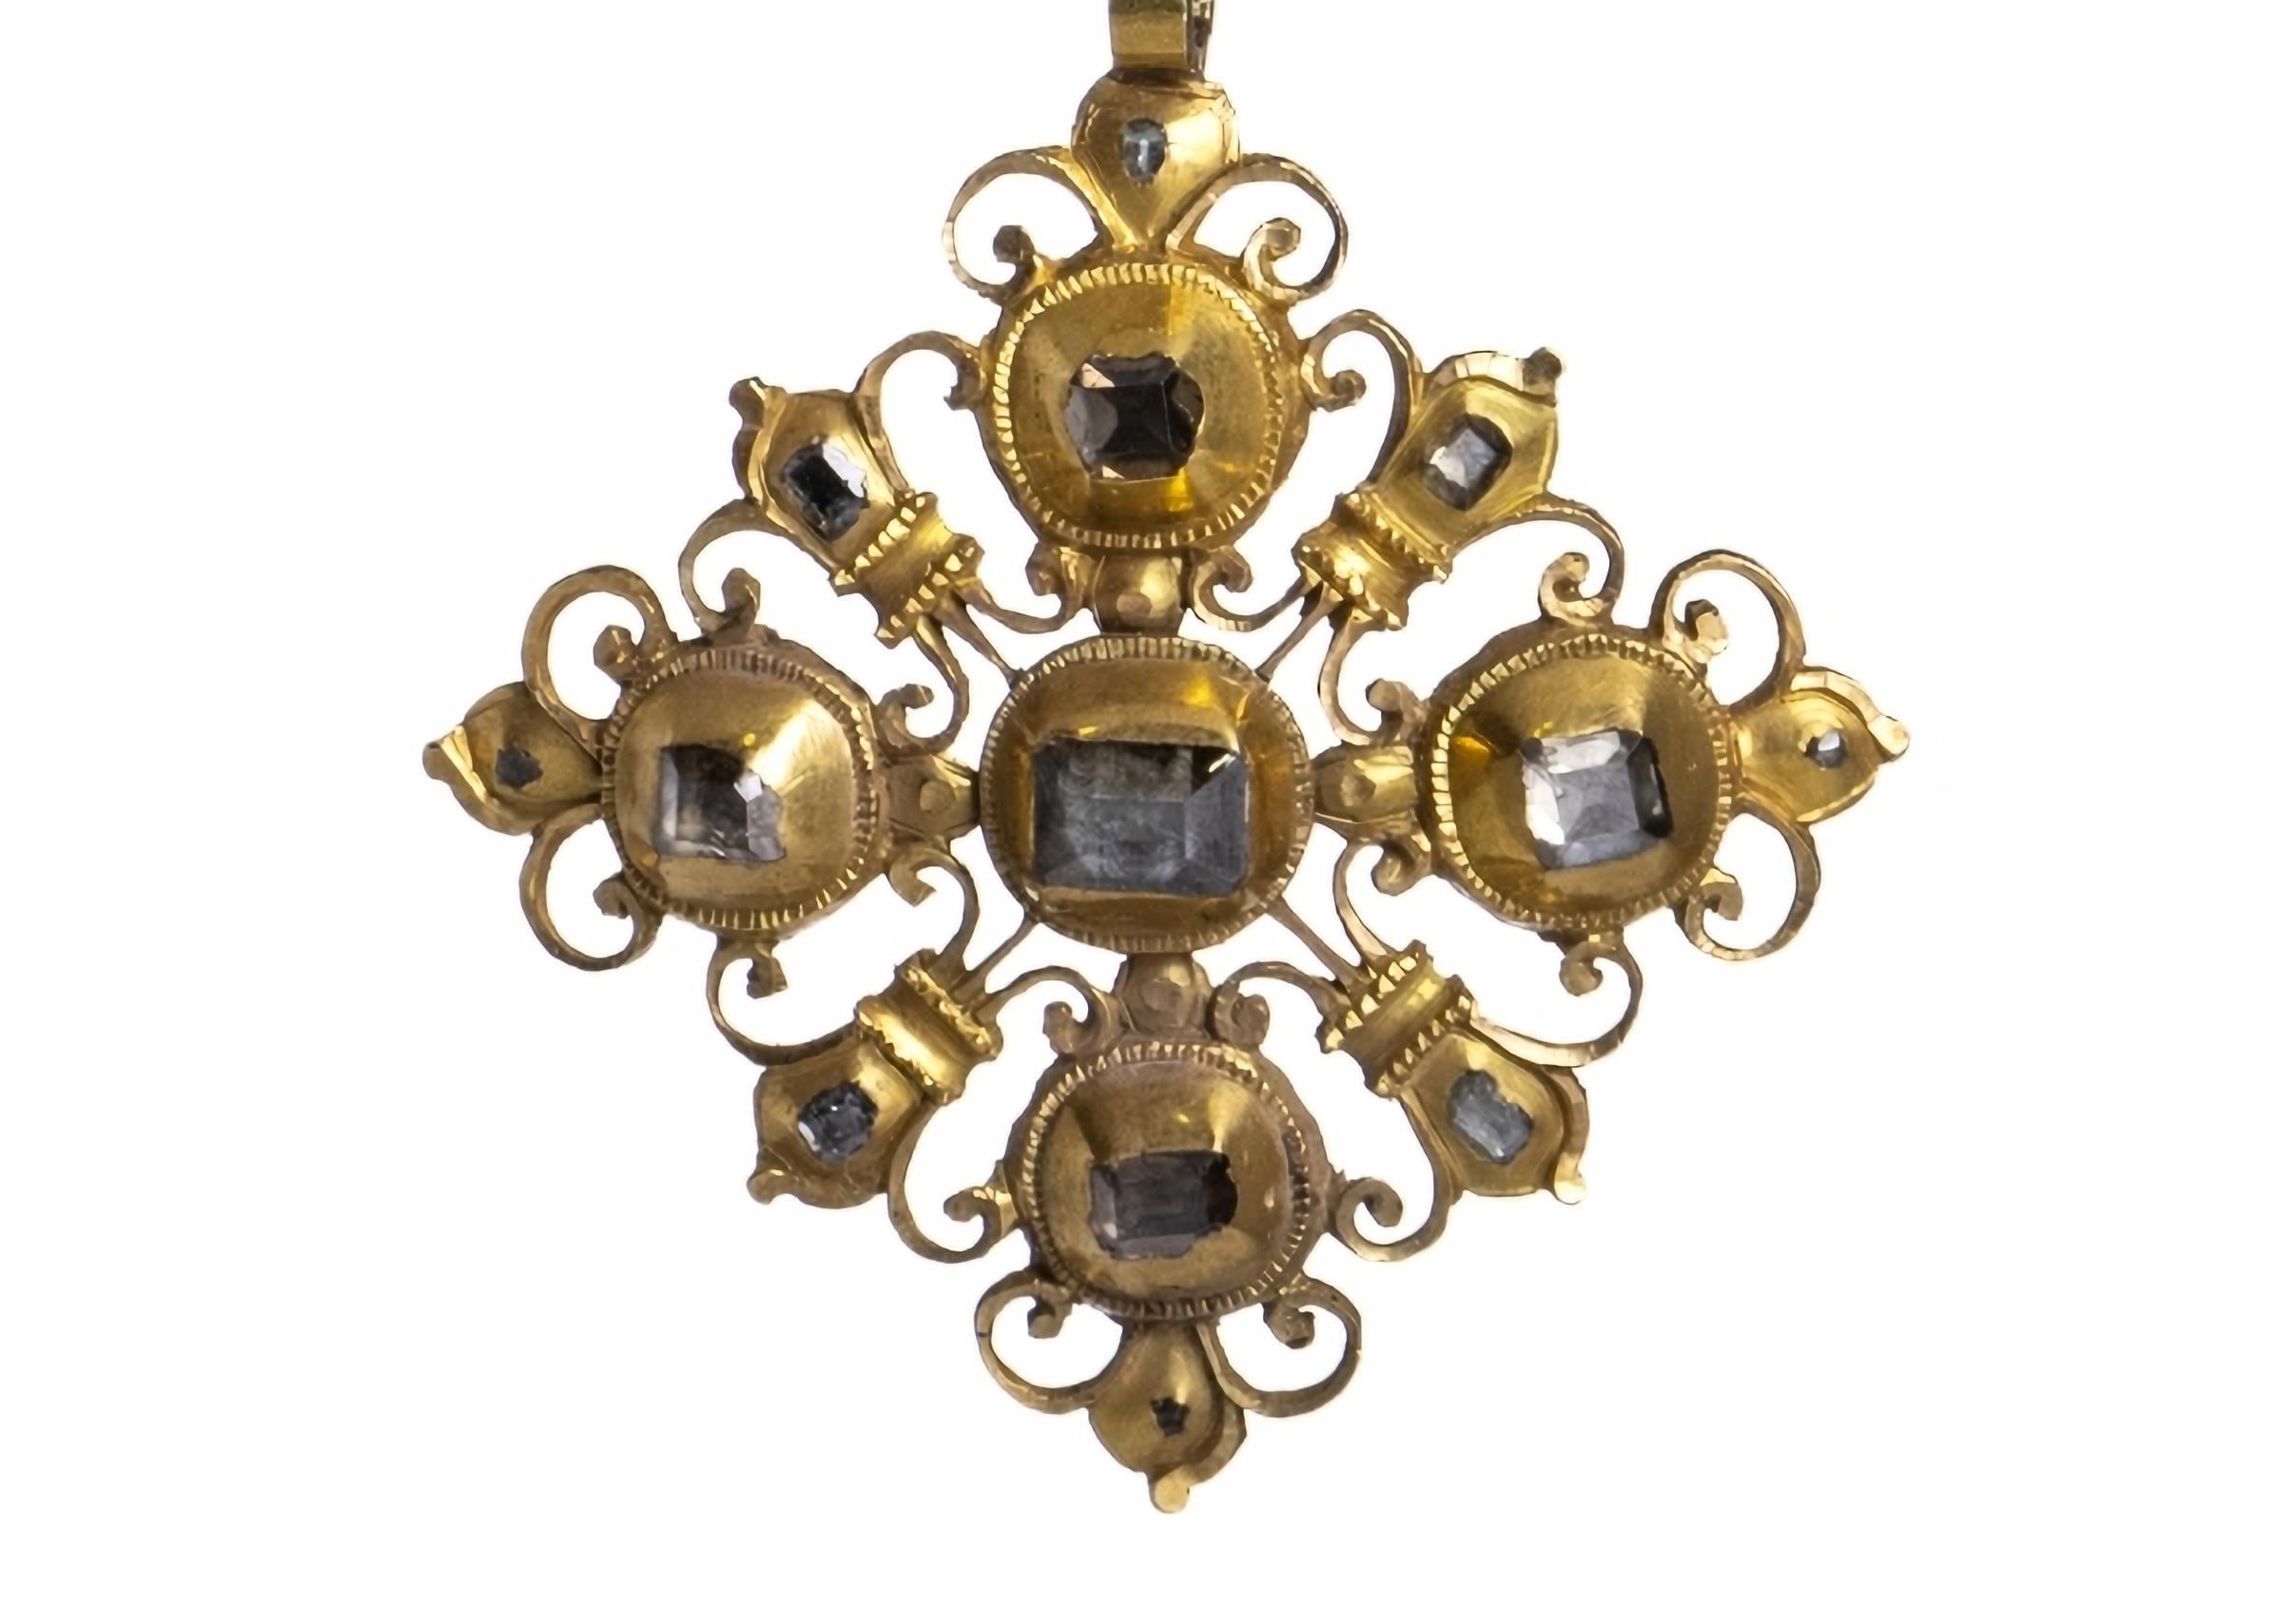 GARNITURE DE CARROSSERIE EN OR AVEC DIAMANTS
18ème siècle
en or 19,2 kt, fenestré et ciselé, à trois corps articulés, serti de diamants de taille ancienne, enchâssés dans des alvéoles. Avec le contraste 